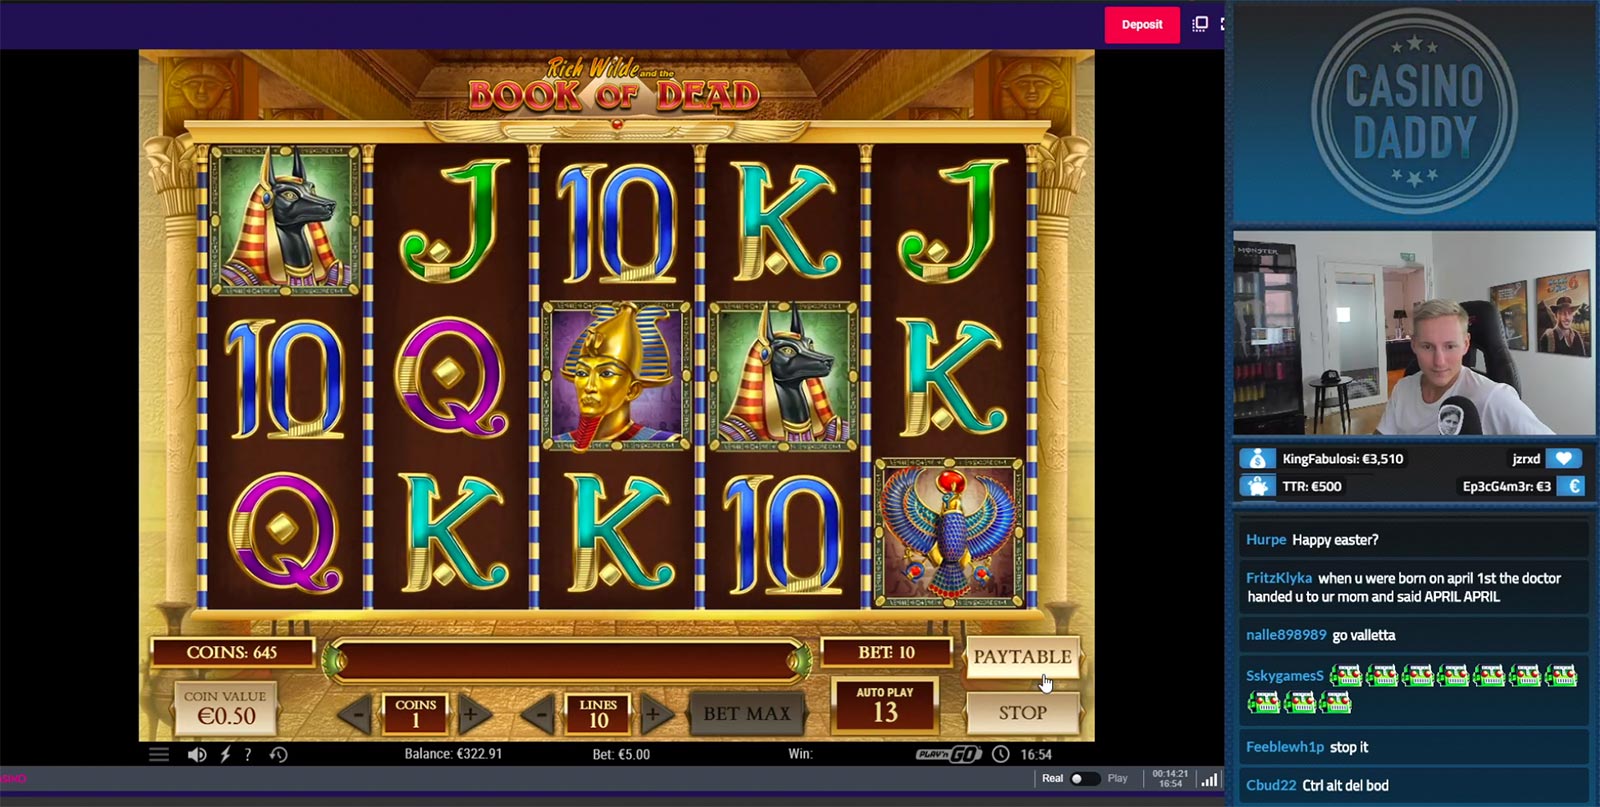 Live meekijken in een online casino via Twitch